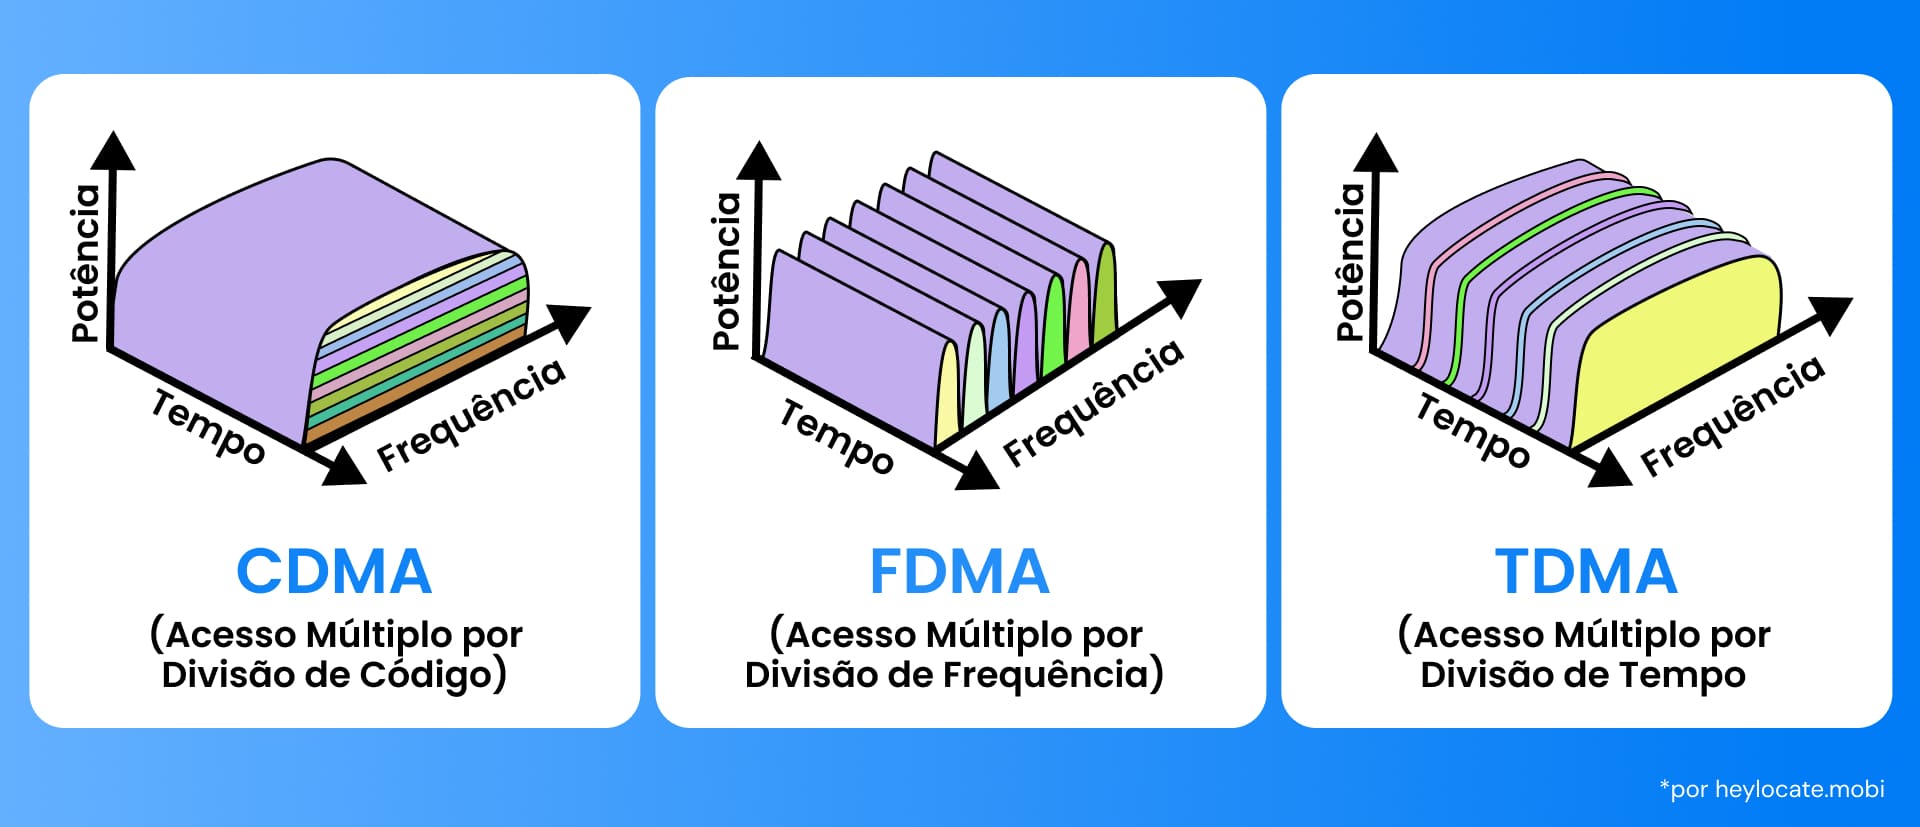 Uma representação de três diferentes tecnologias de acesso múltiplo usadas em telecomunicações: Acesso Múltiplo por Divisão de Código (CDMA), Acesso Múltiplo por Divisão de Tempo (TDMA) e Acesso Múltiplo por Divisão de Frequência (FDMA). Cada método é representado por um gráfico tridimensional que mostra como cada tecnologia divide o espectro de comunicações de forma diferente por potência, tempo e frequência